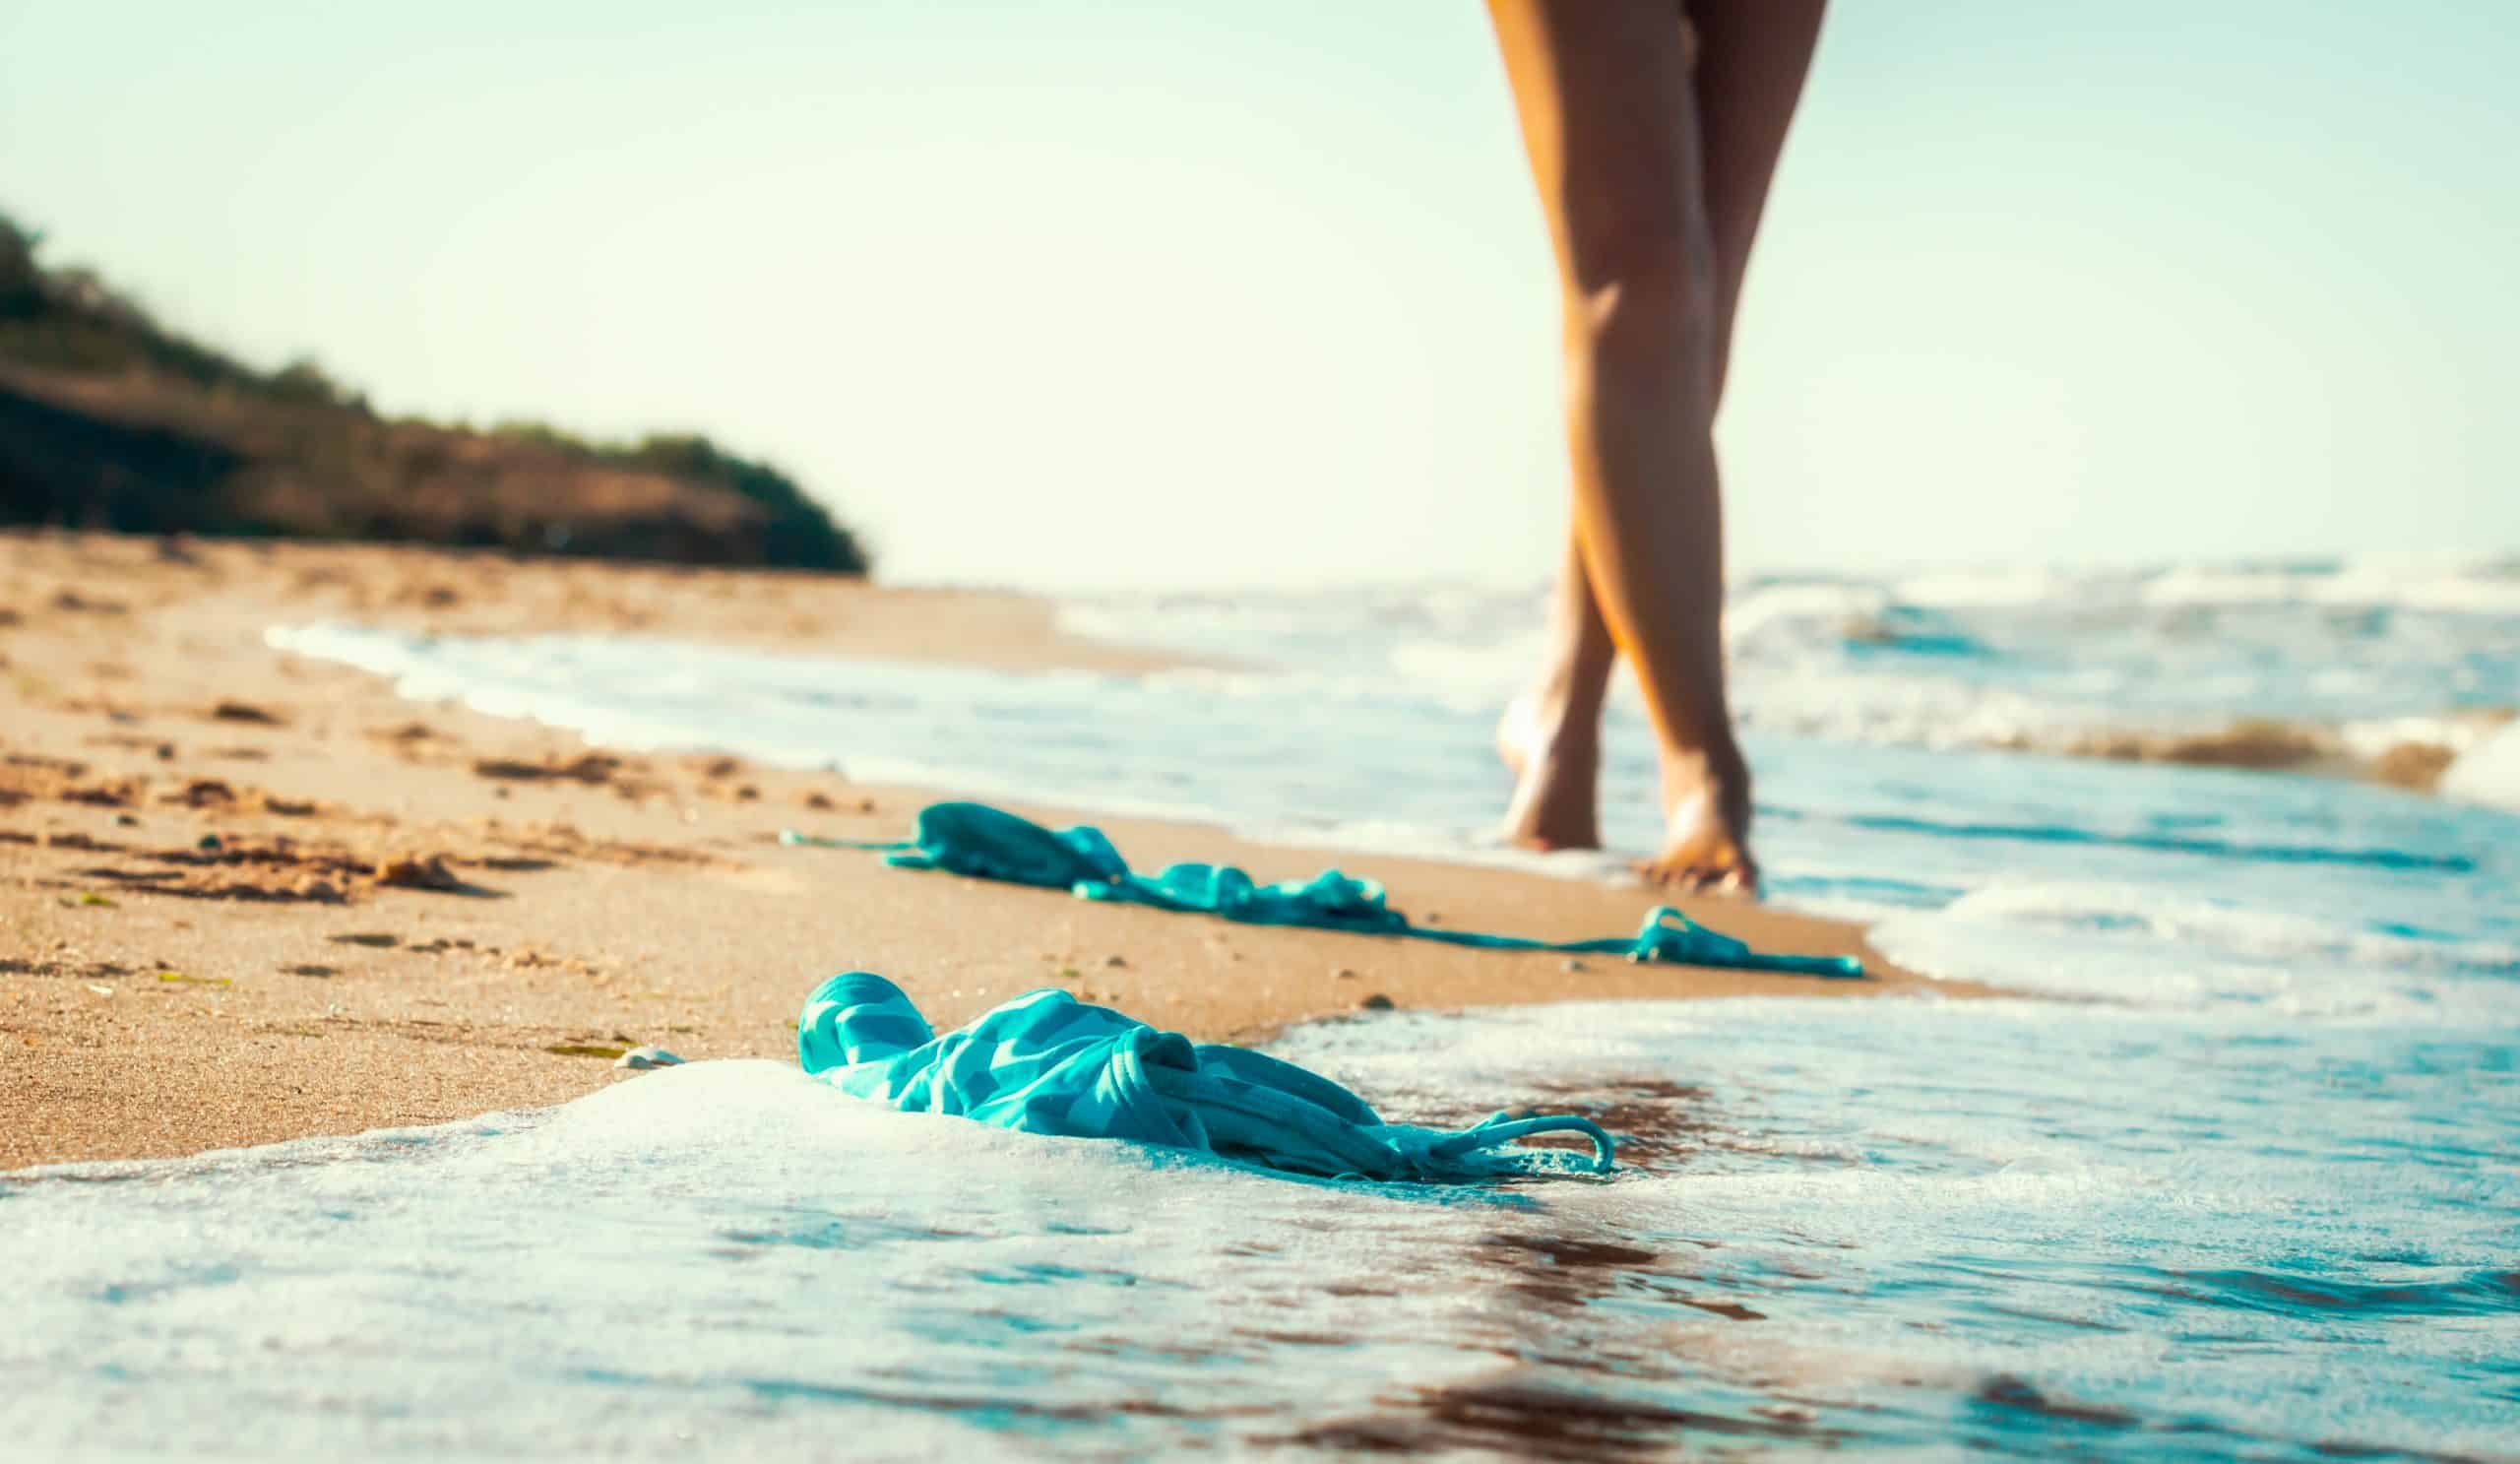 Best of American nude beach videos